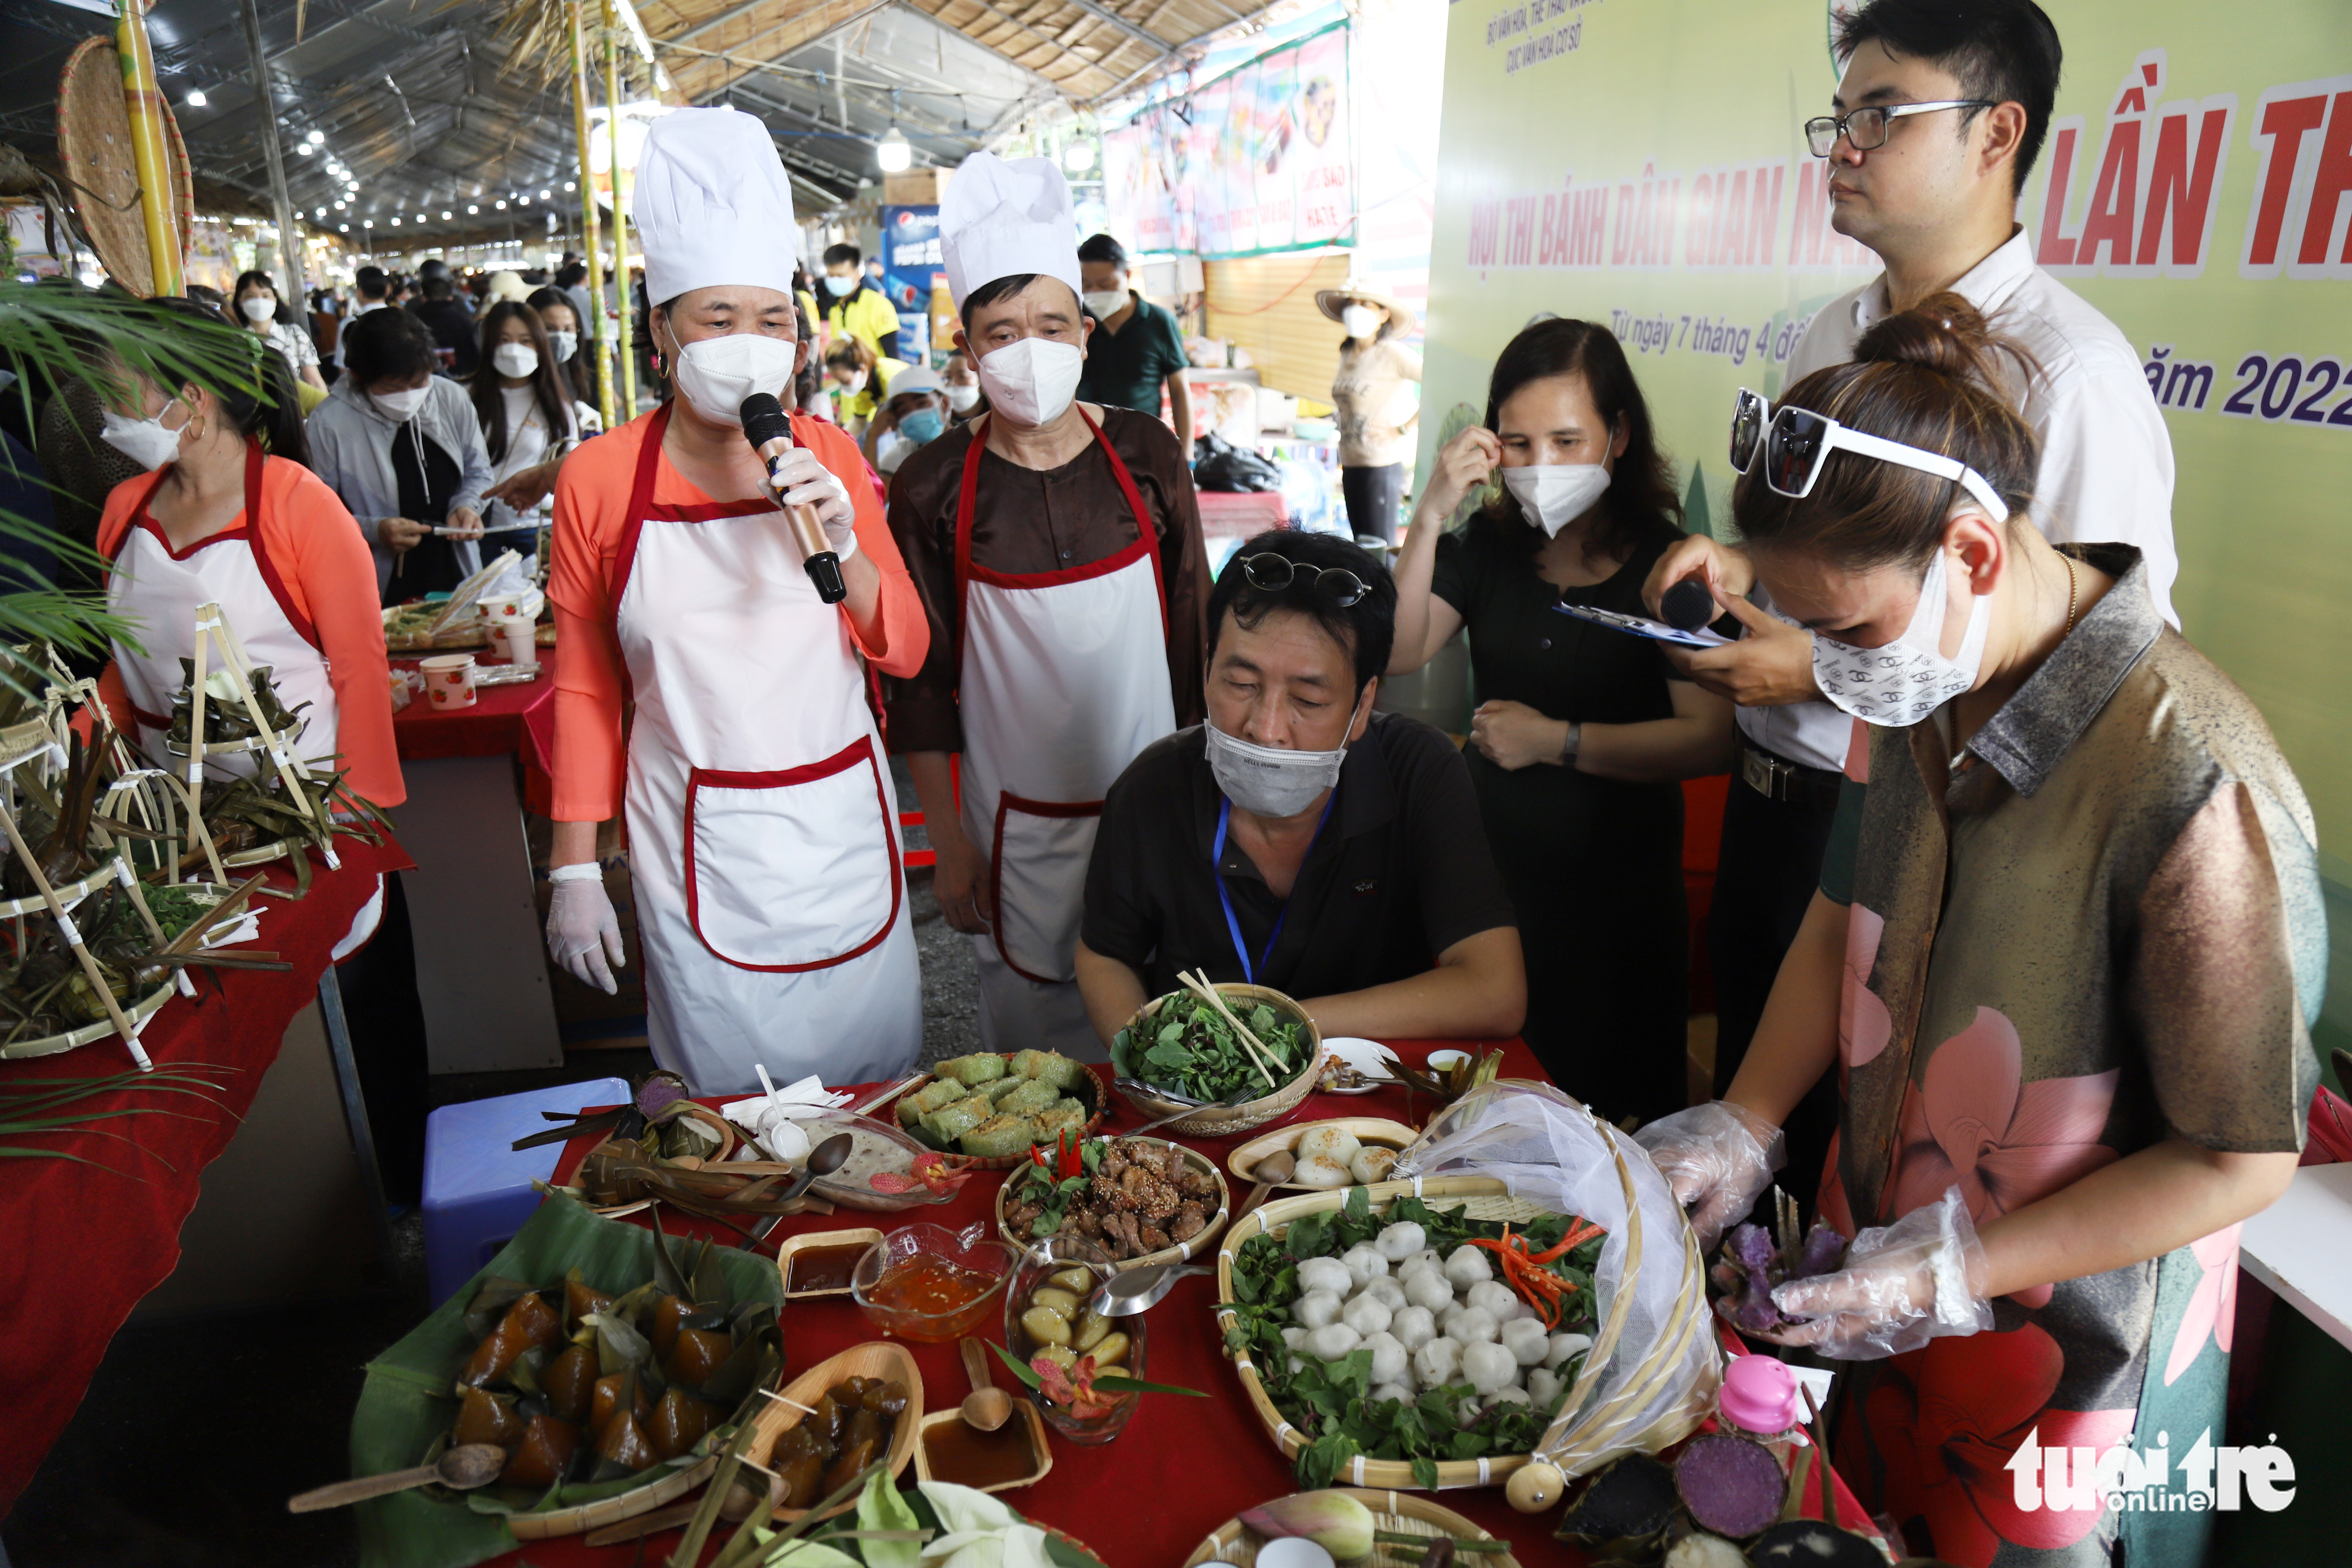 Ремесленники и пекари участвуют в конкурсе по приготовлению традиционных закусок на фестивале традиционных южных закусок в городе Кантхо, Вьетнам, 7 апреля 2022 года. Фото: Чи Куок / Туой Тре